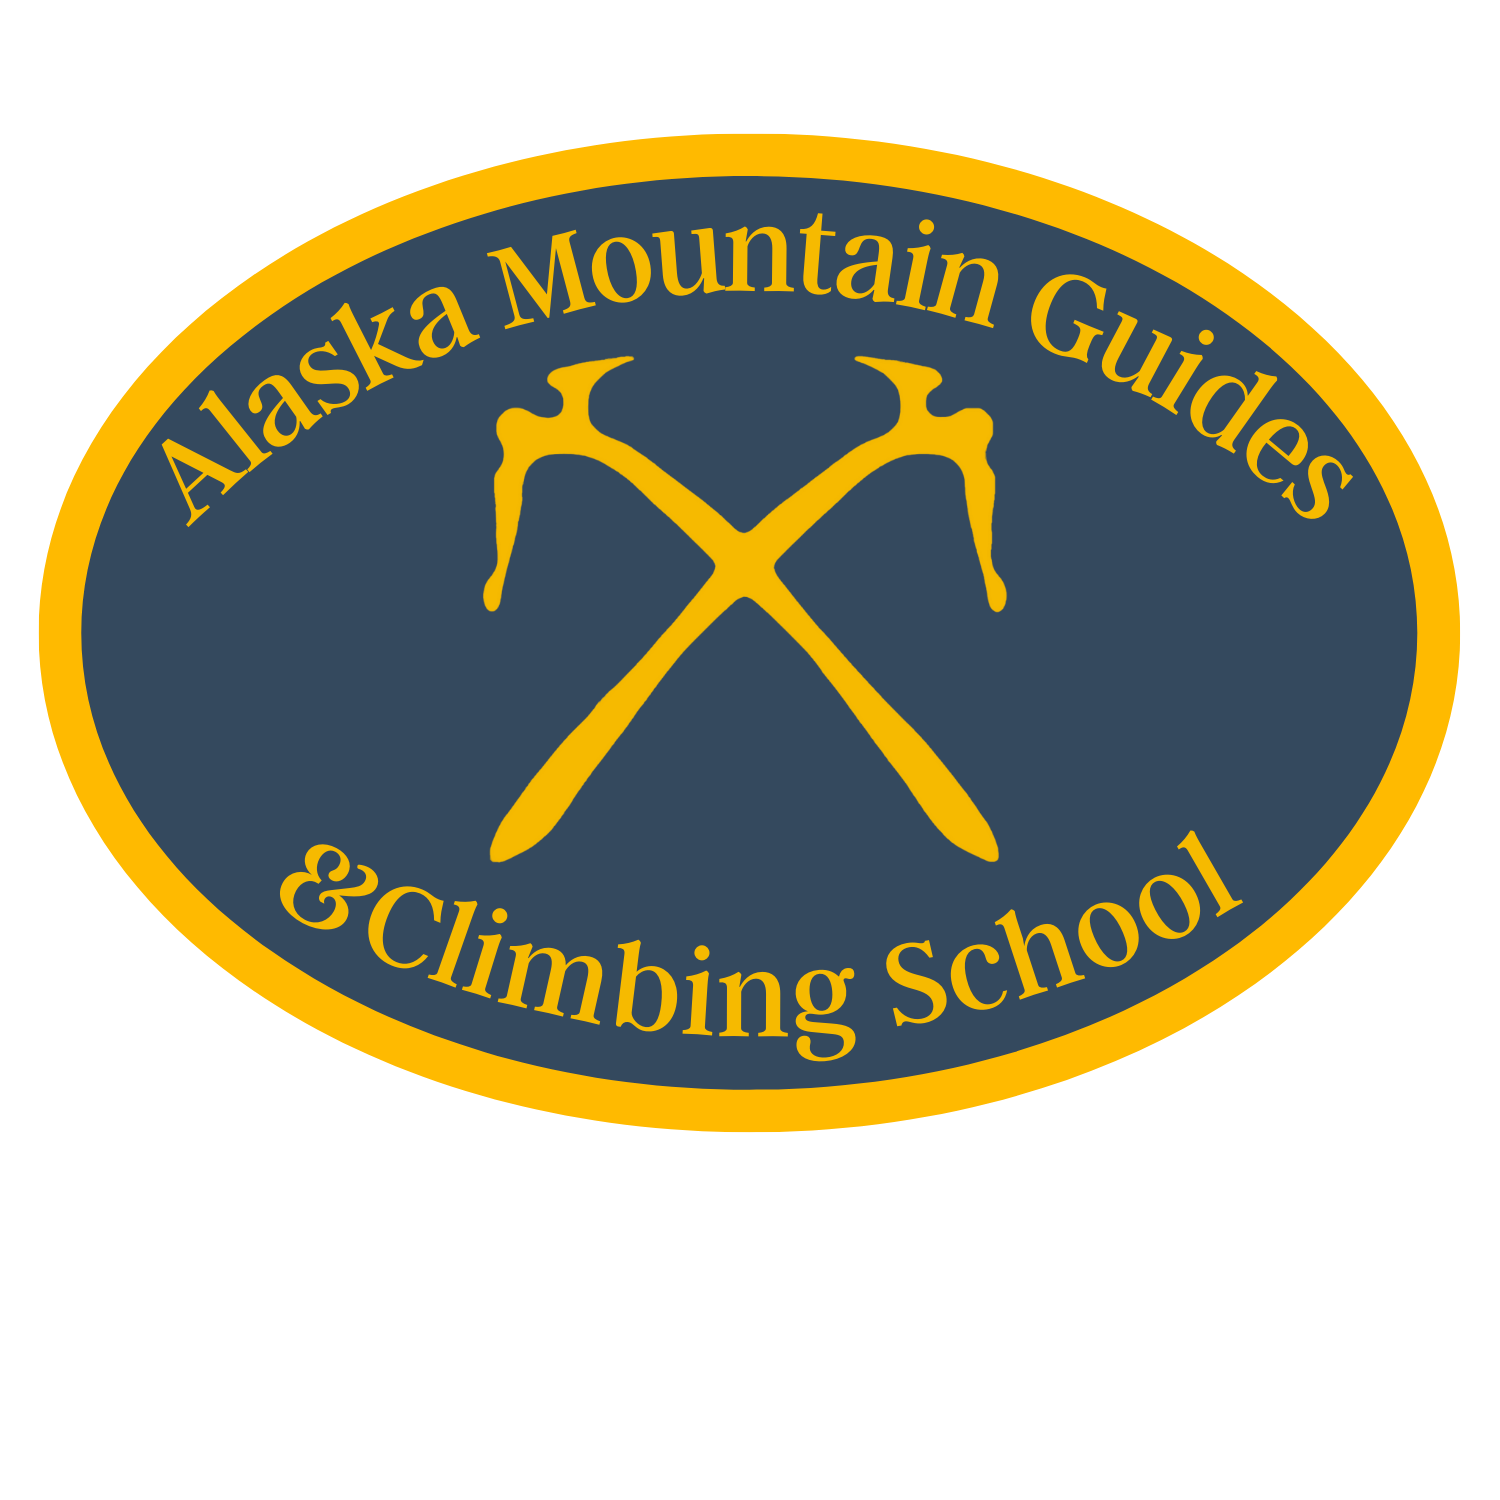 AlaskaMountainGuides41 Alaska Mountain Guides & Climbing School, Inc.